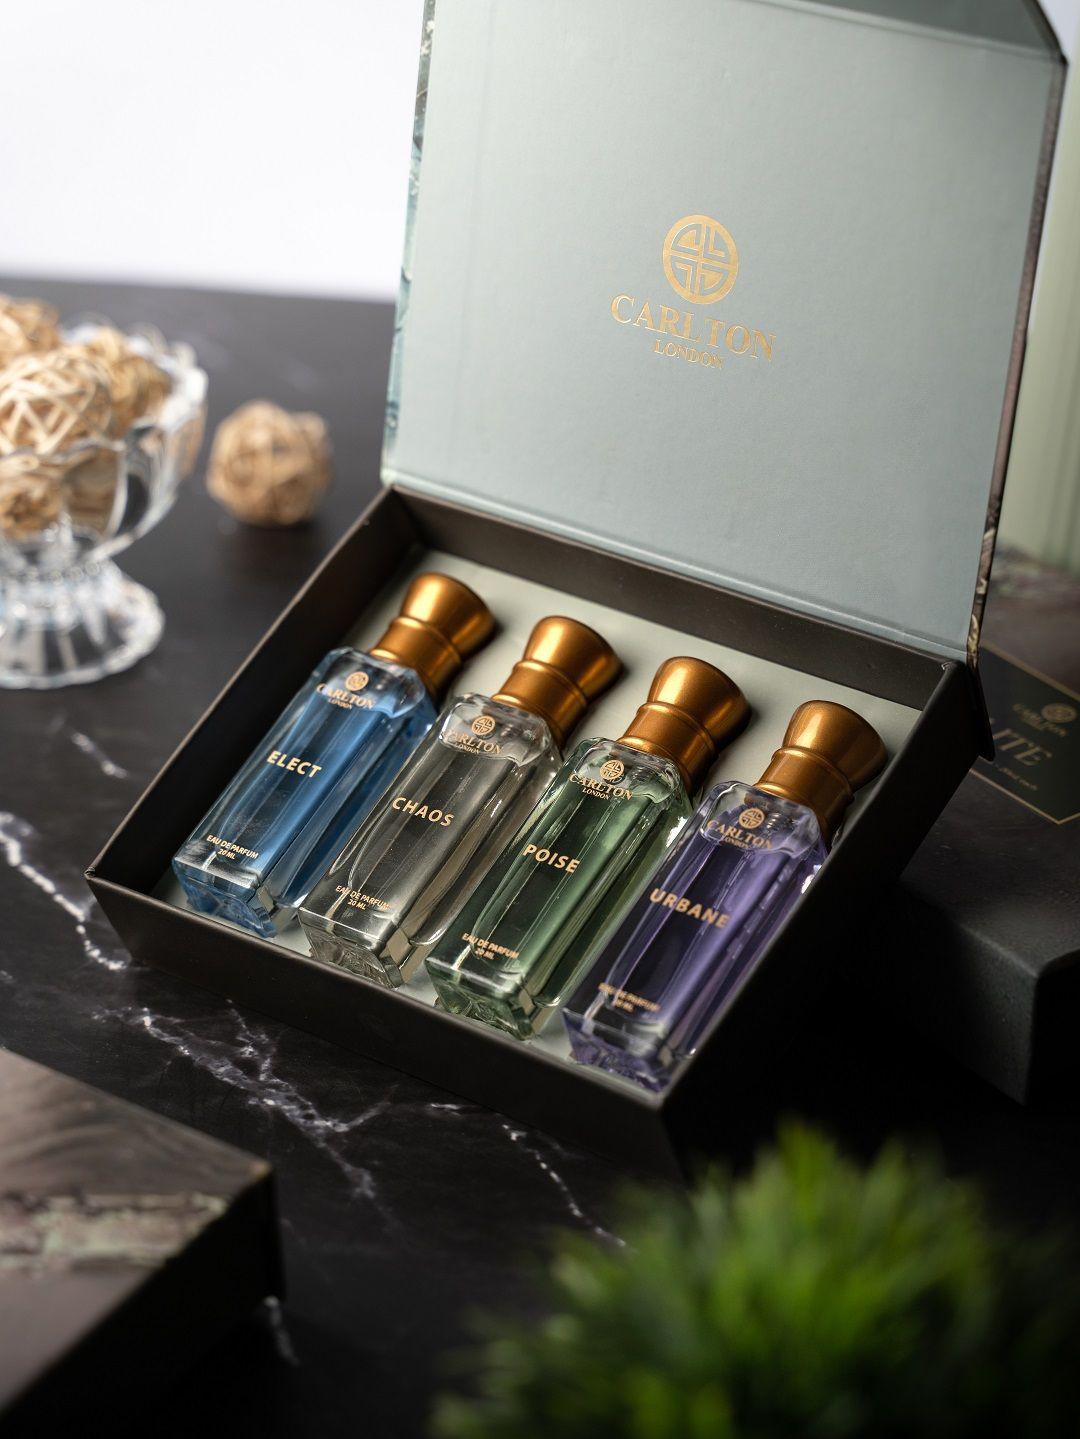 carlton london elite set of 4 eau de parfum - 20 ml each